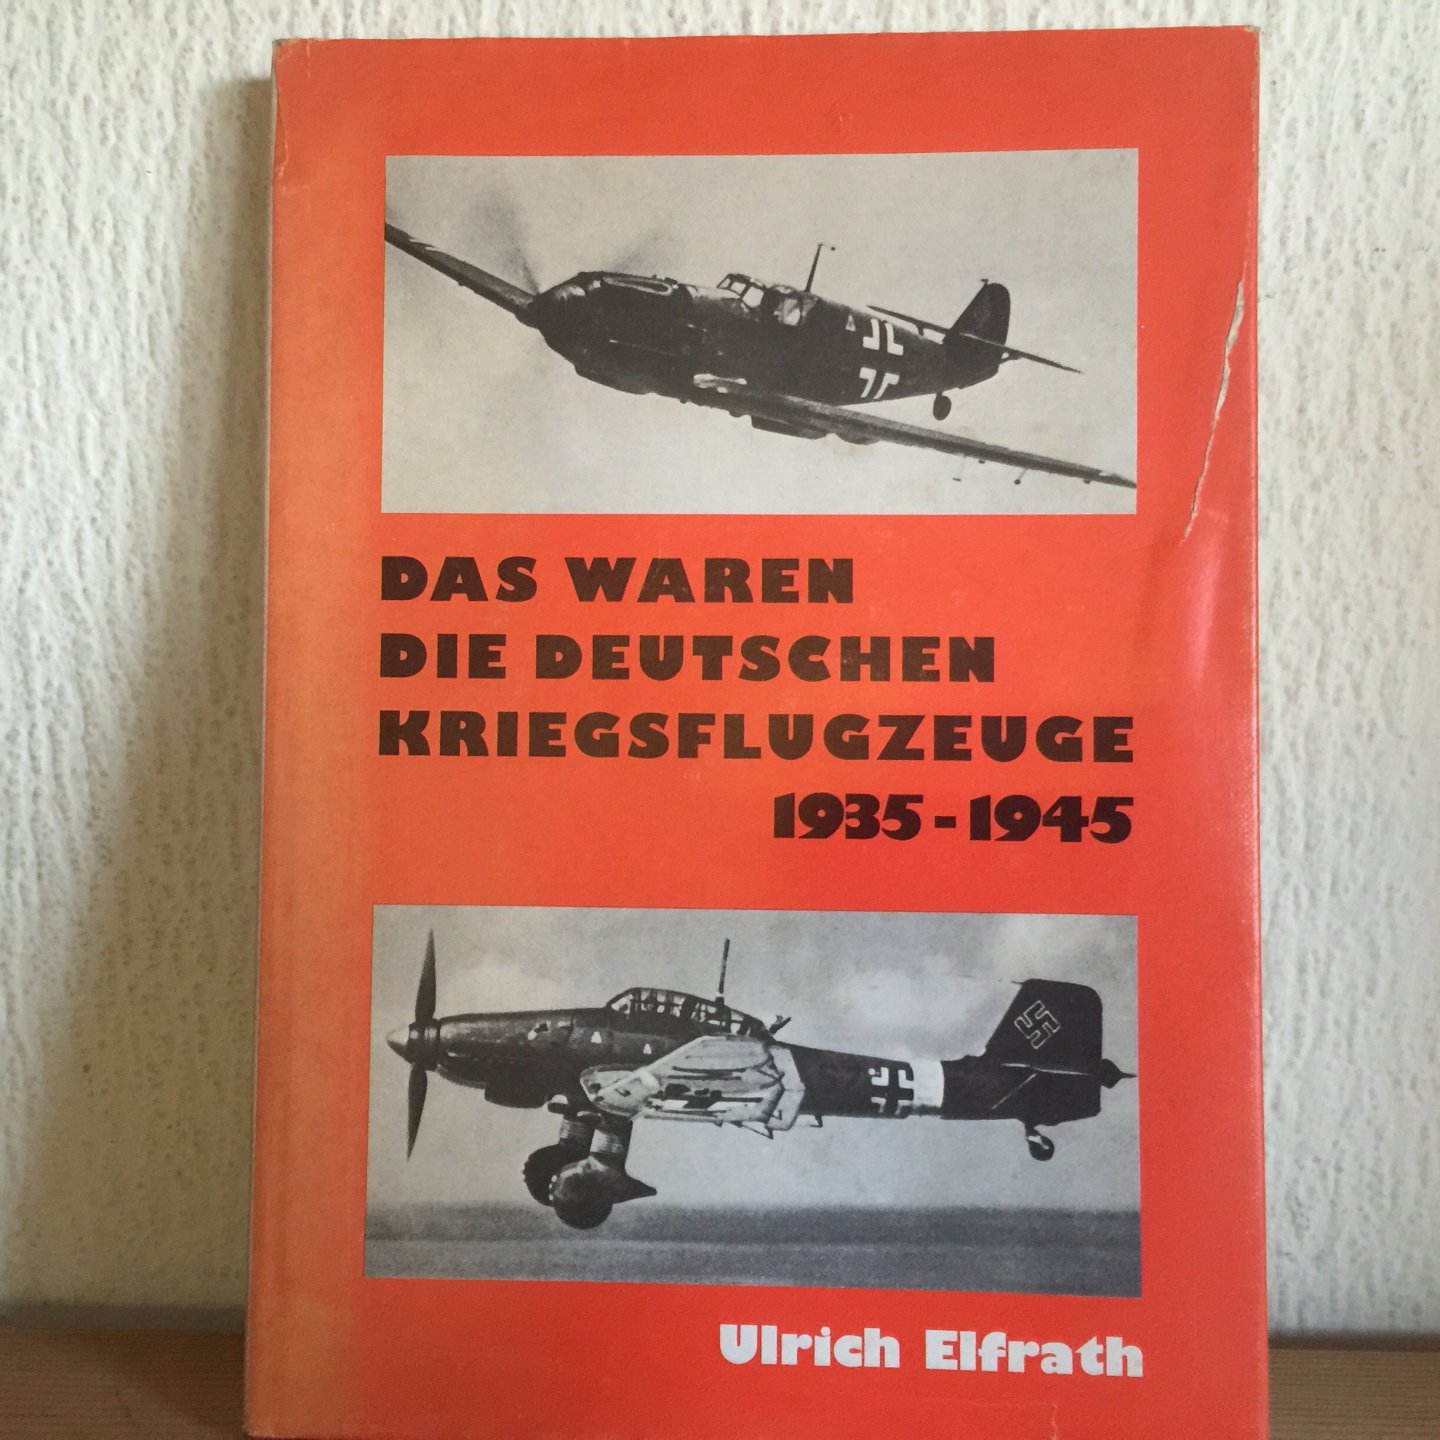 Ulrich Elfrath - Das waren die Deutschen Kriegsflugzeuge 1935-1945